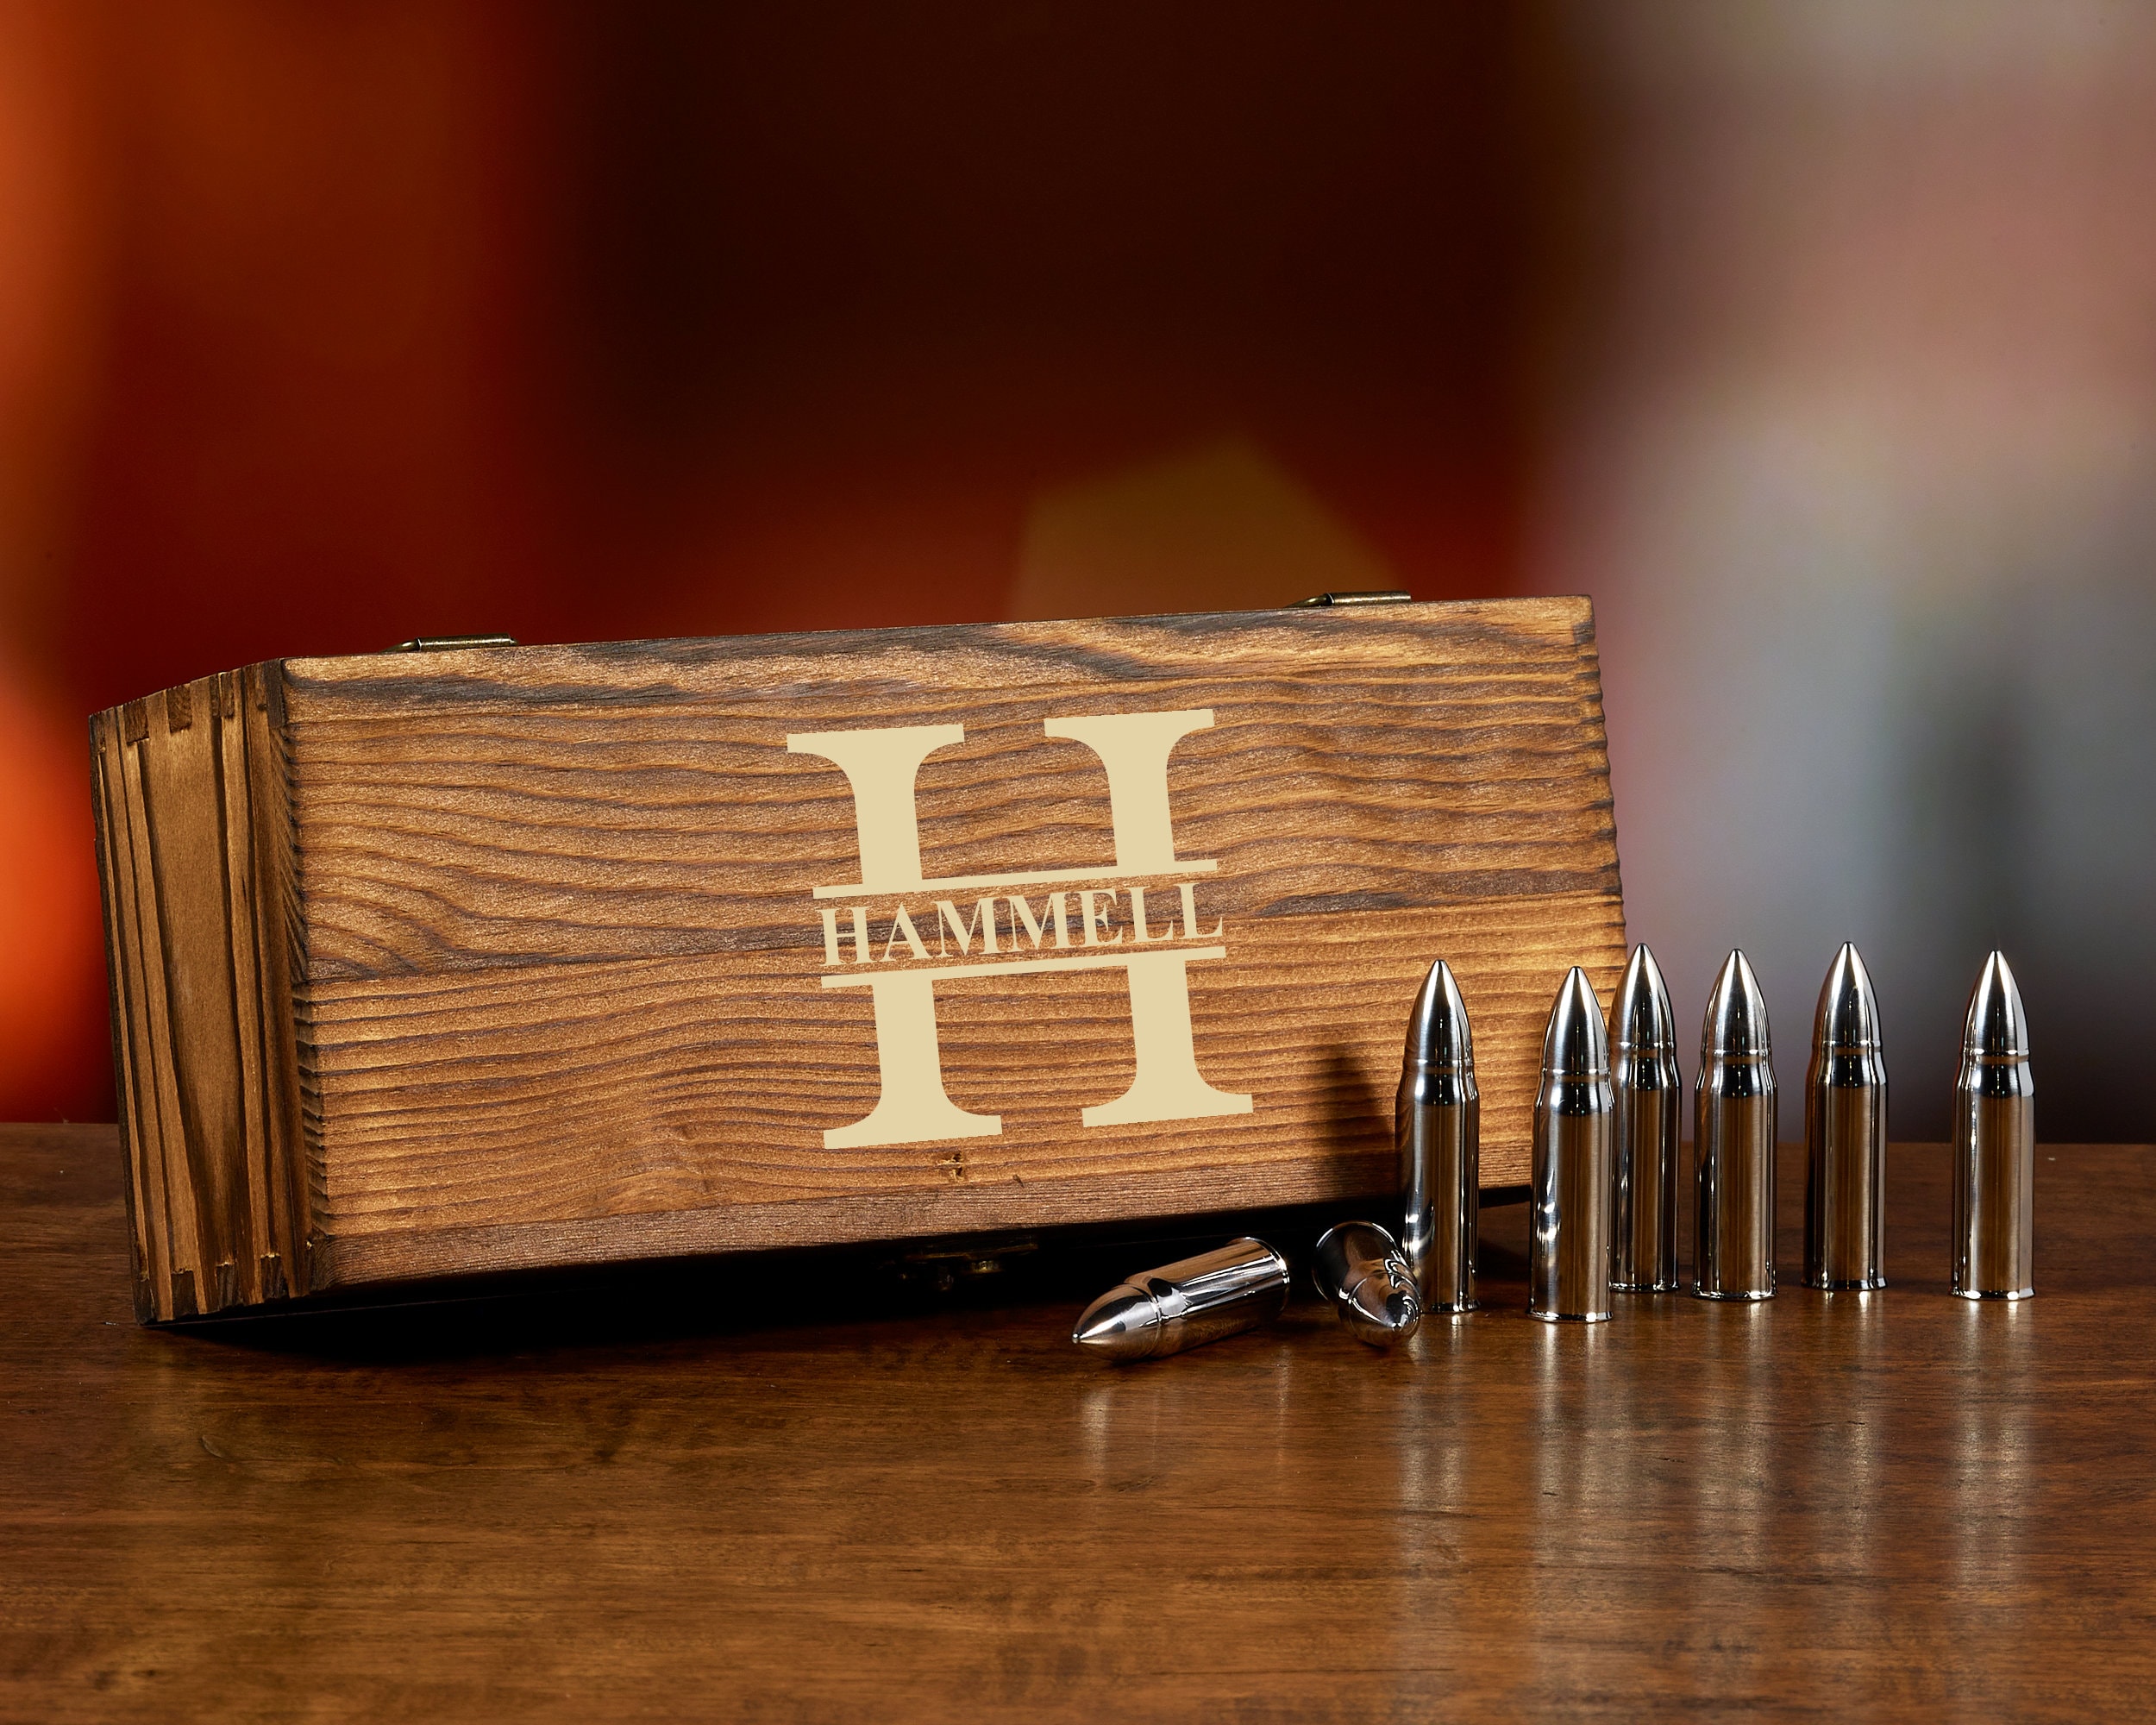 LSDZSWCYY Military Style Whiskey Bullet Stone Extra Large 6 Packs， Whi —  CHIMIYA